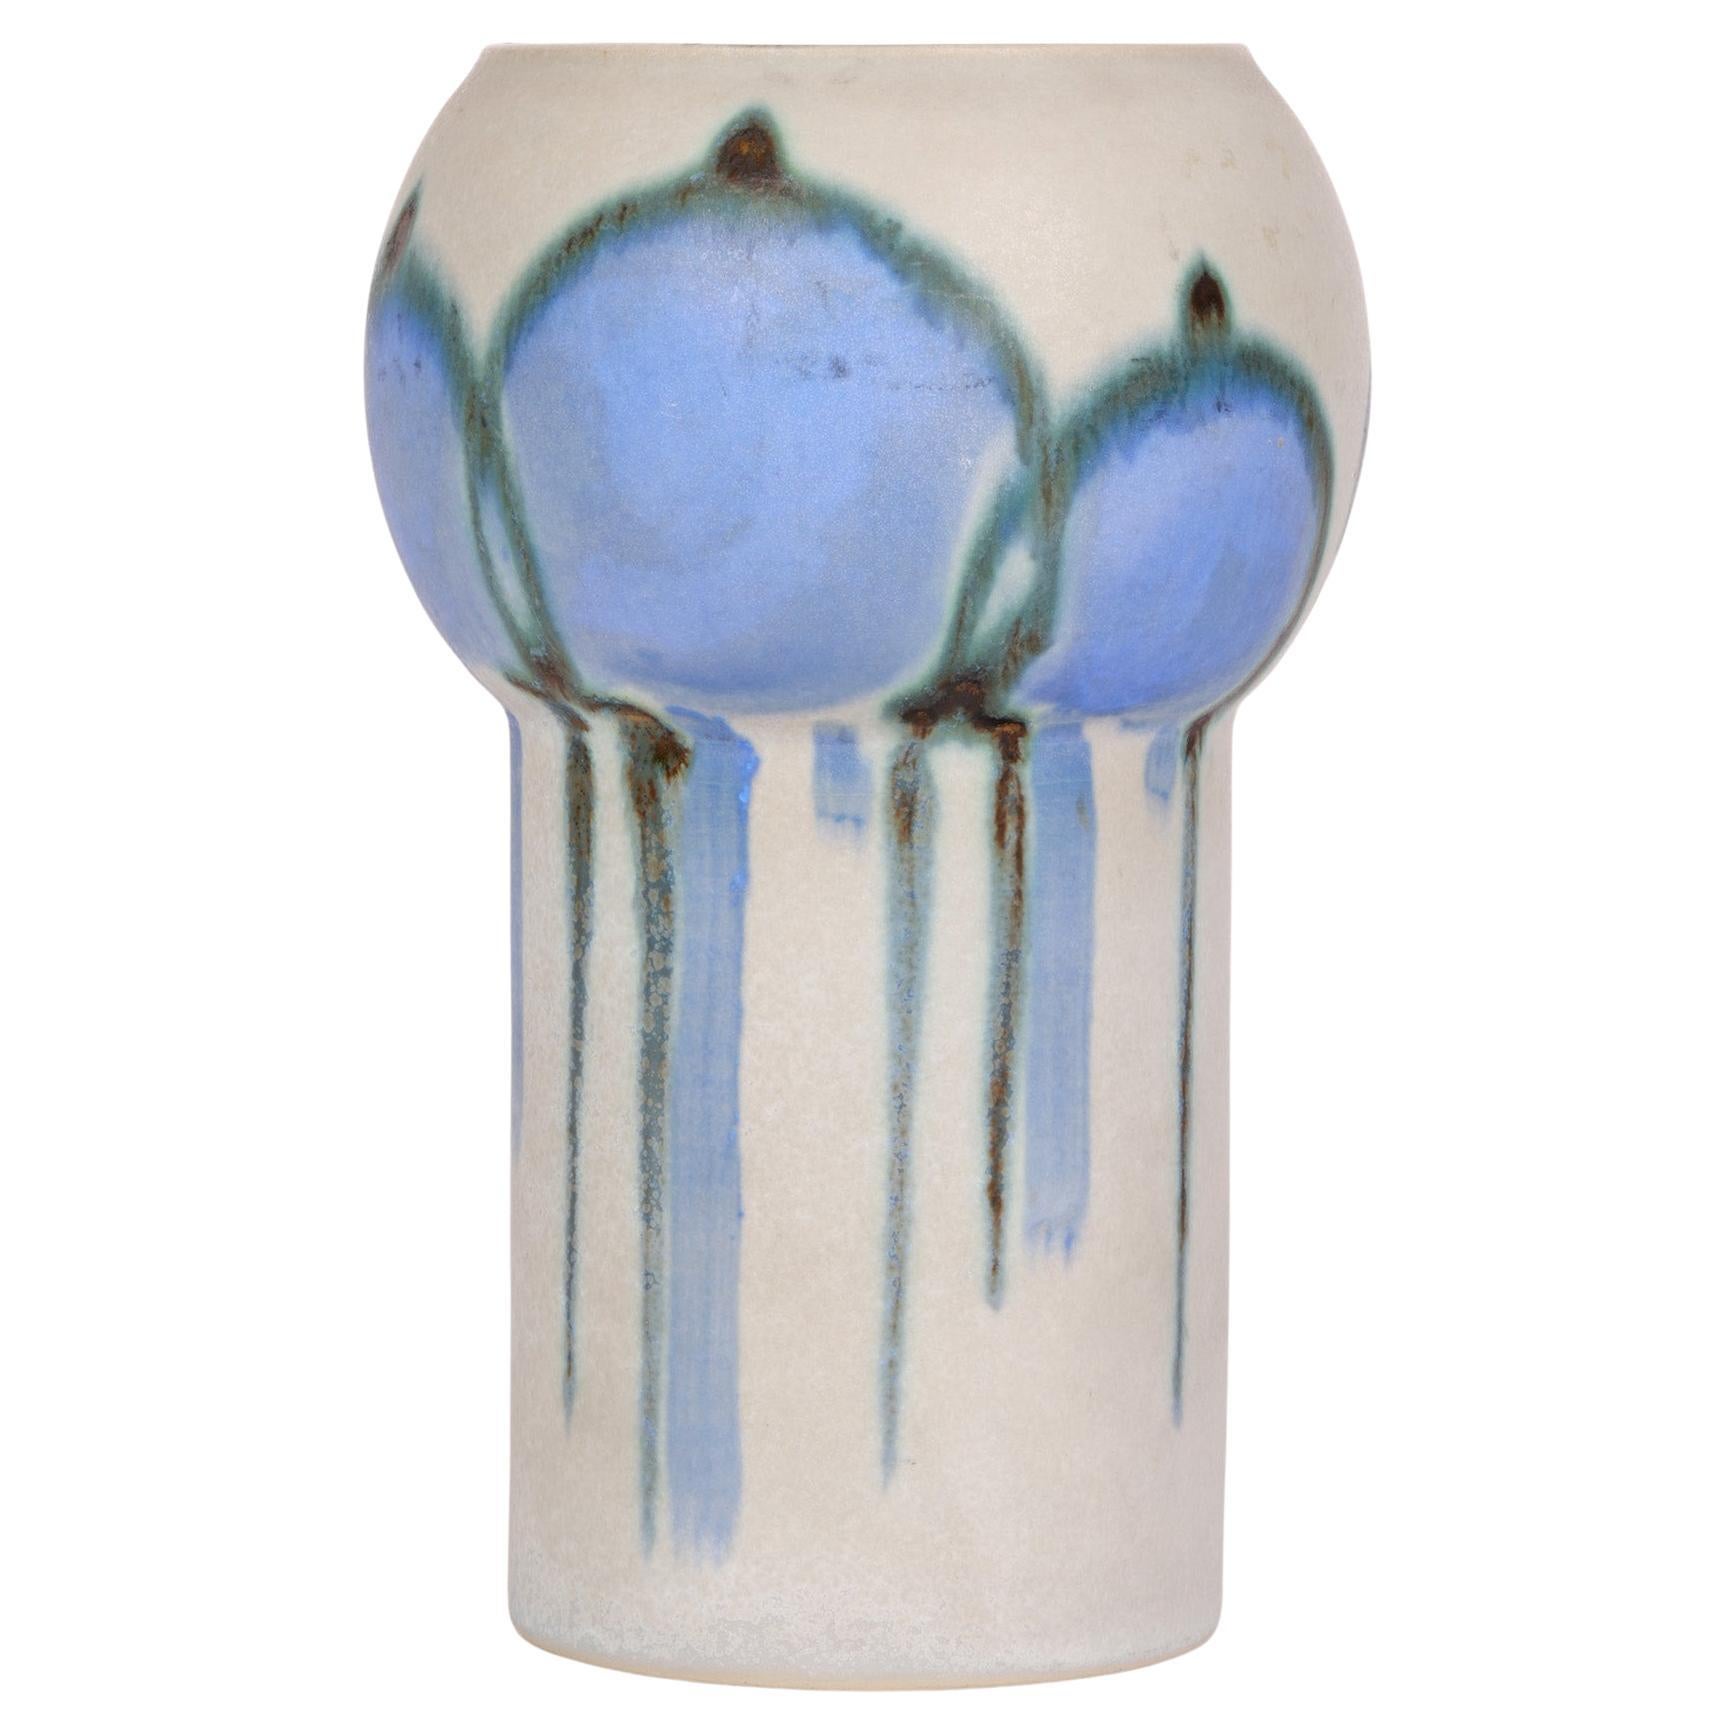 Drejar Gruppen for Rörstrand Swedish Stylized Modern Ceramic Vase, 1973